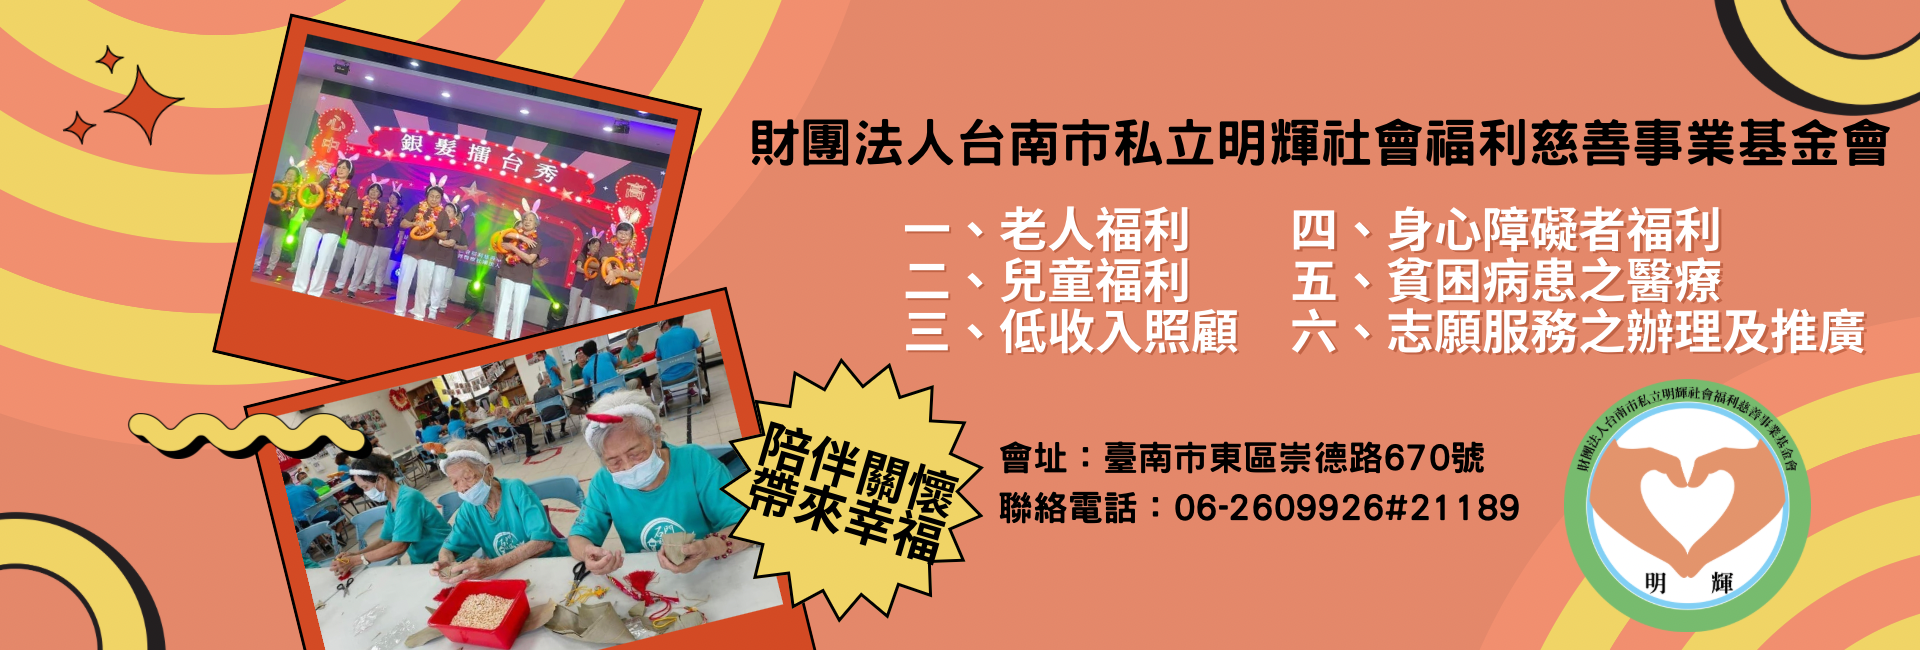 財團法人台南市私立明輝社會福利慈善事業基金會-募款活動